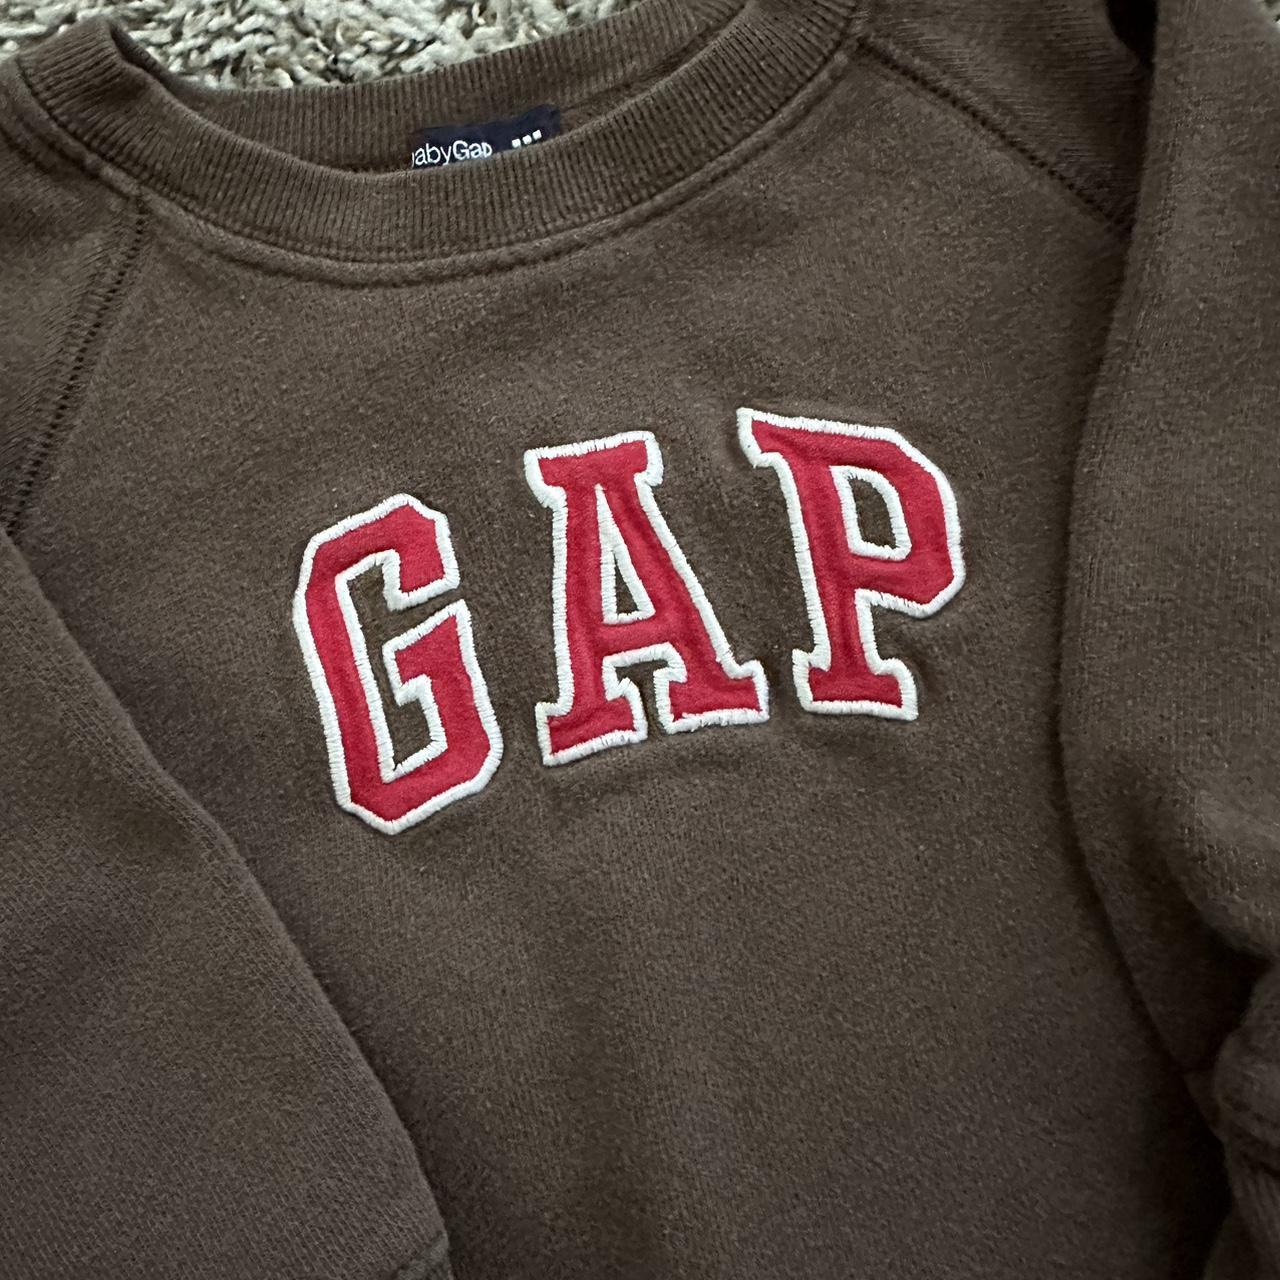 Gap Brown and Red Sweatshirt | Depop